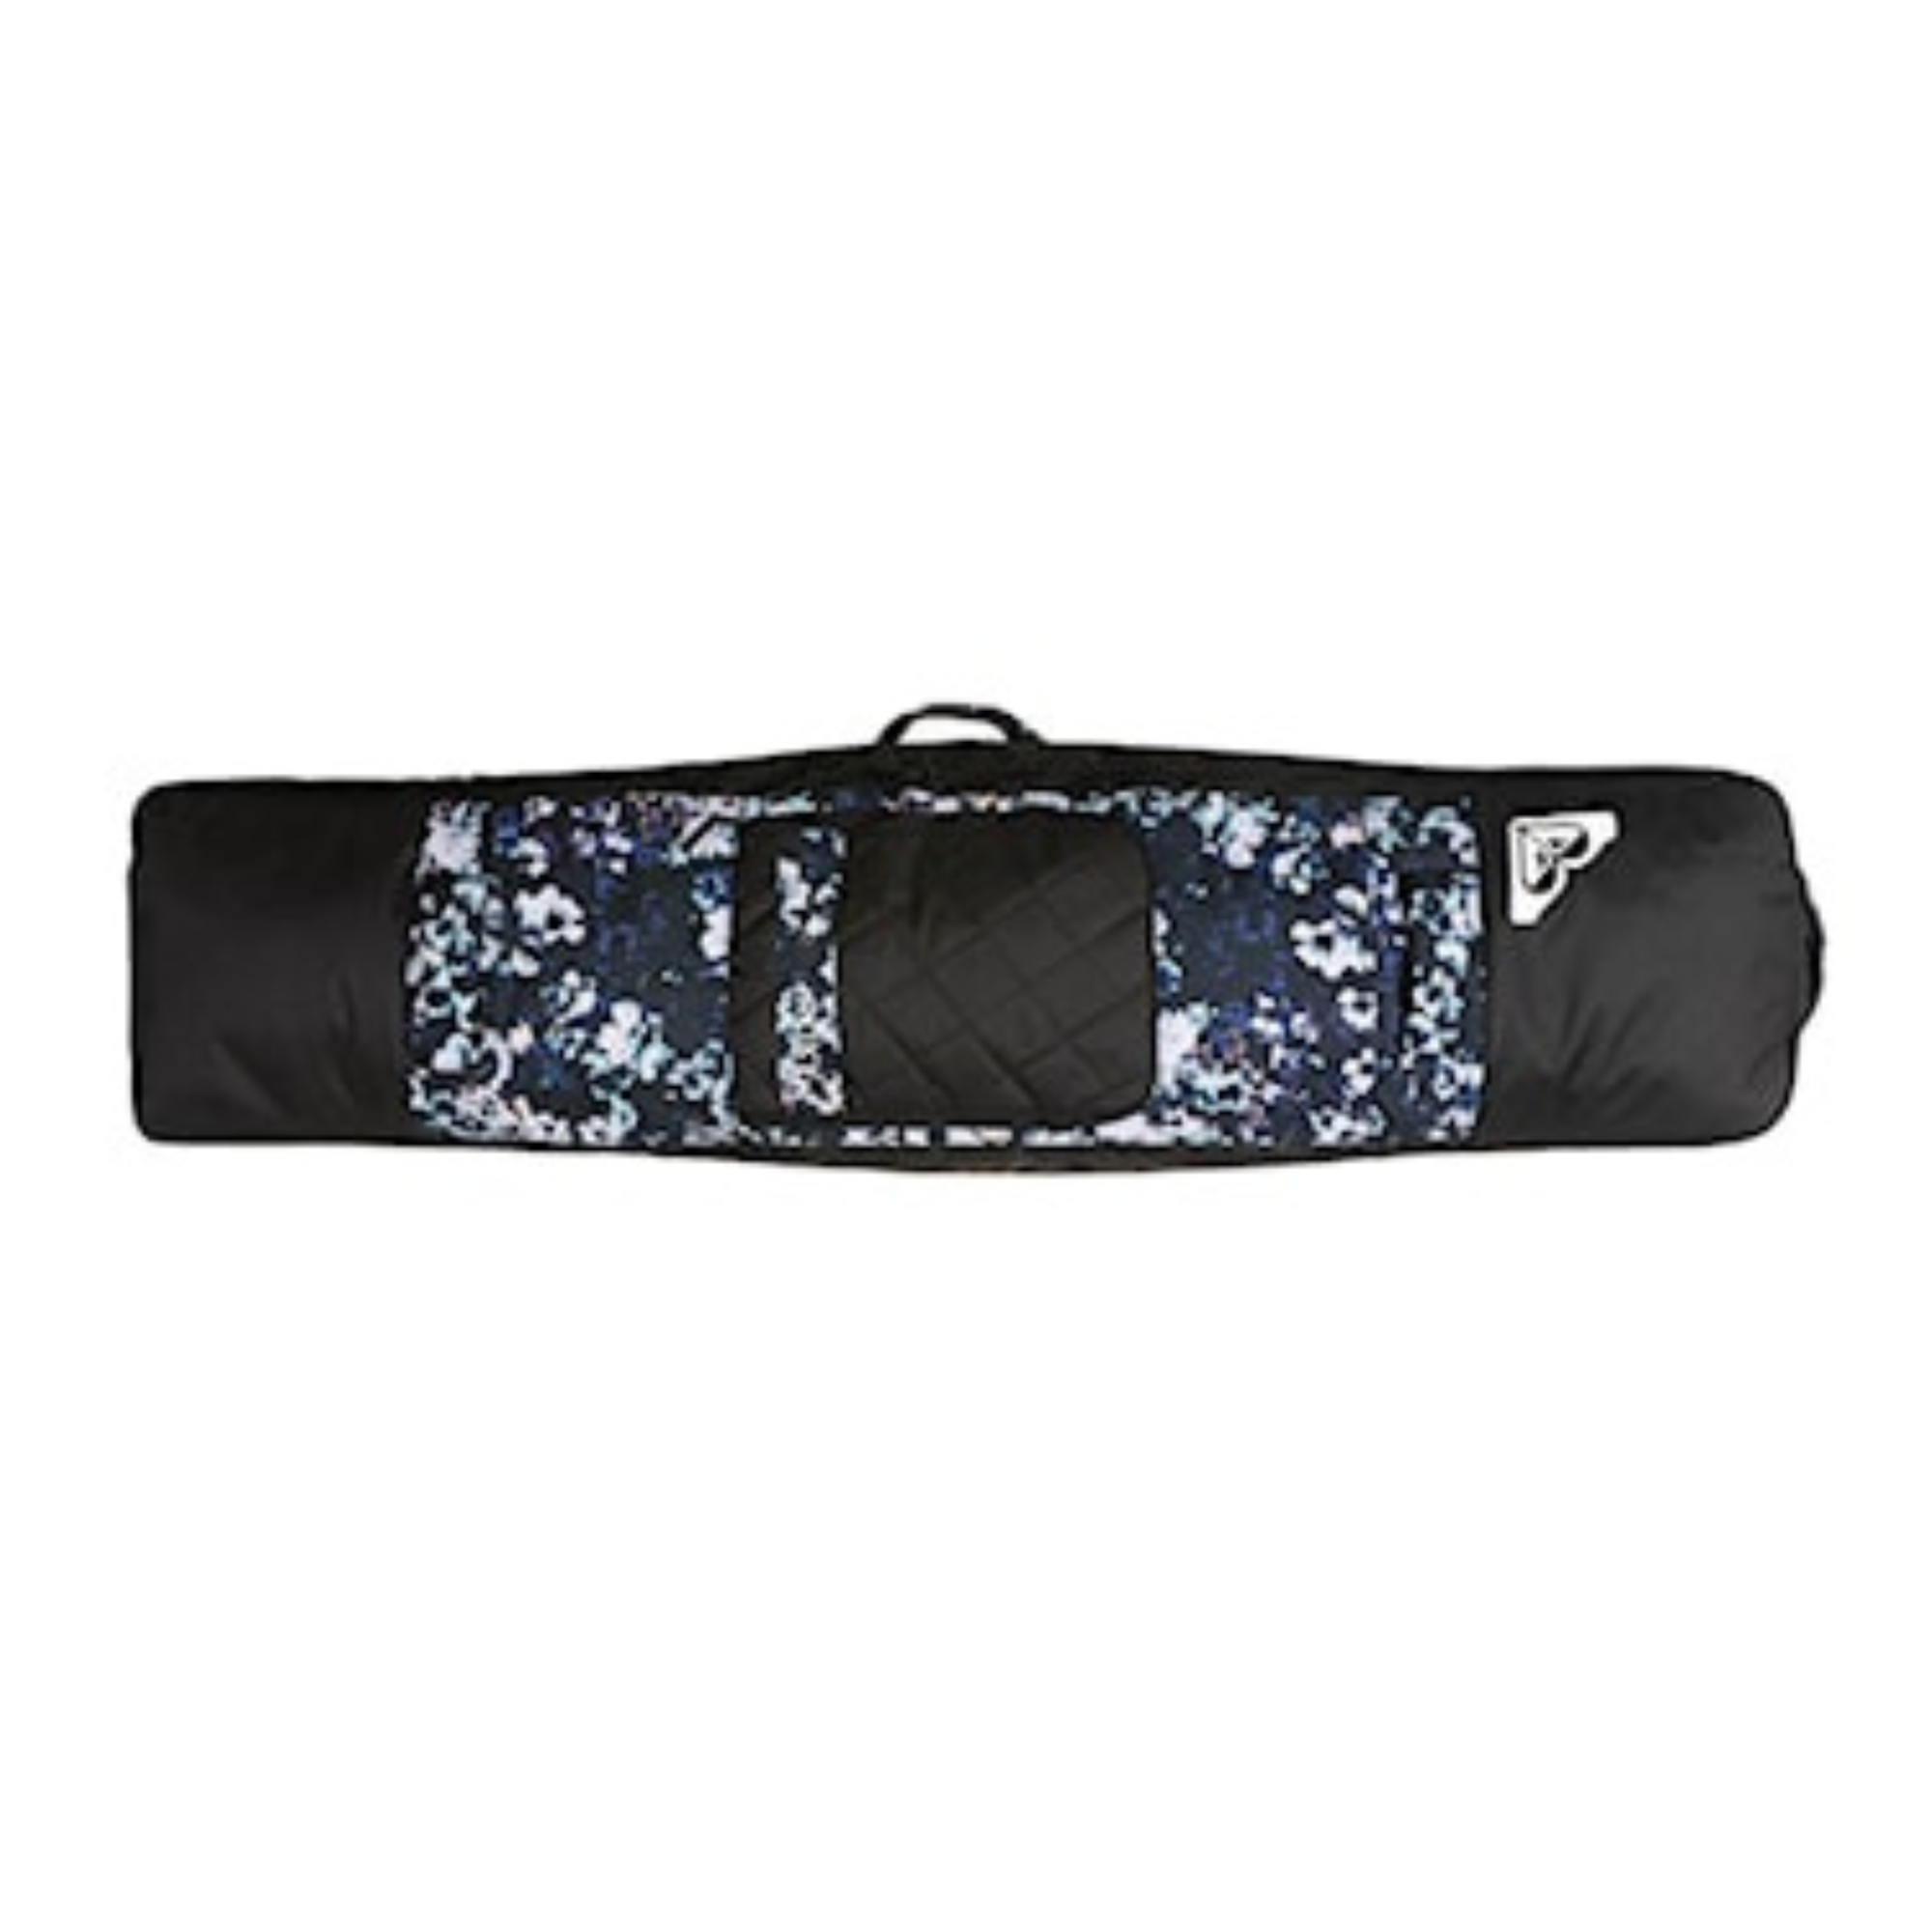 Roxy Vermont Board Bag - True Black Black Flowers